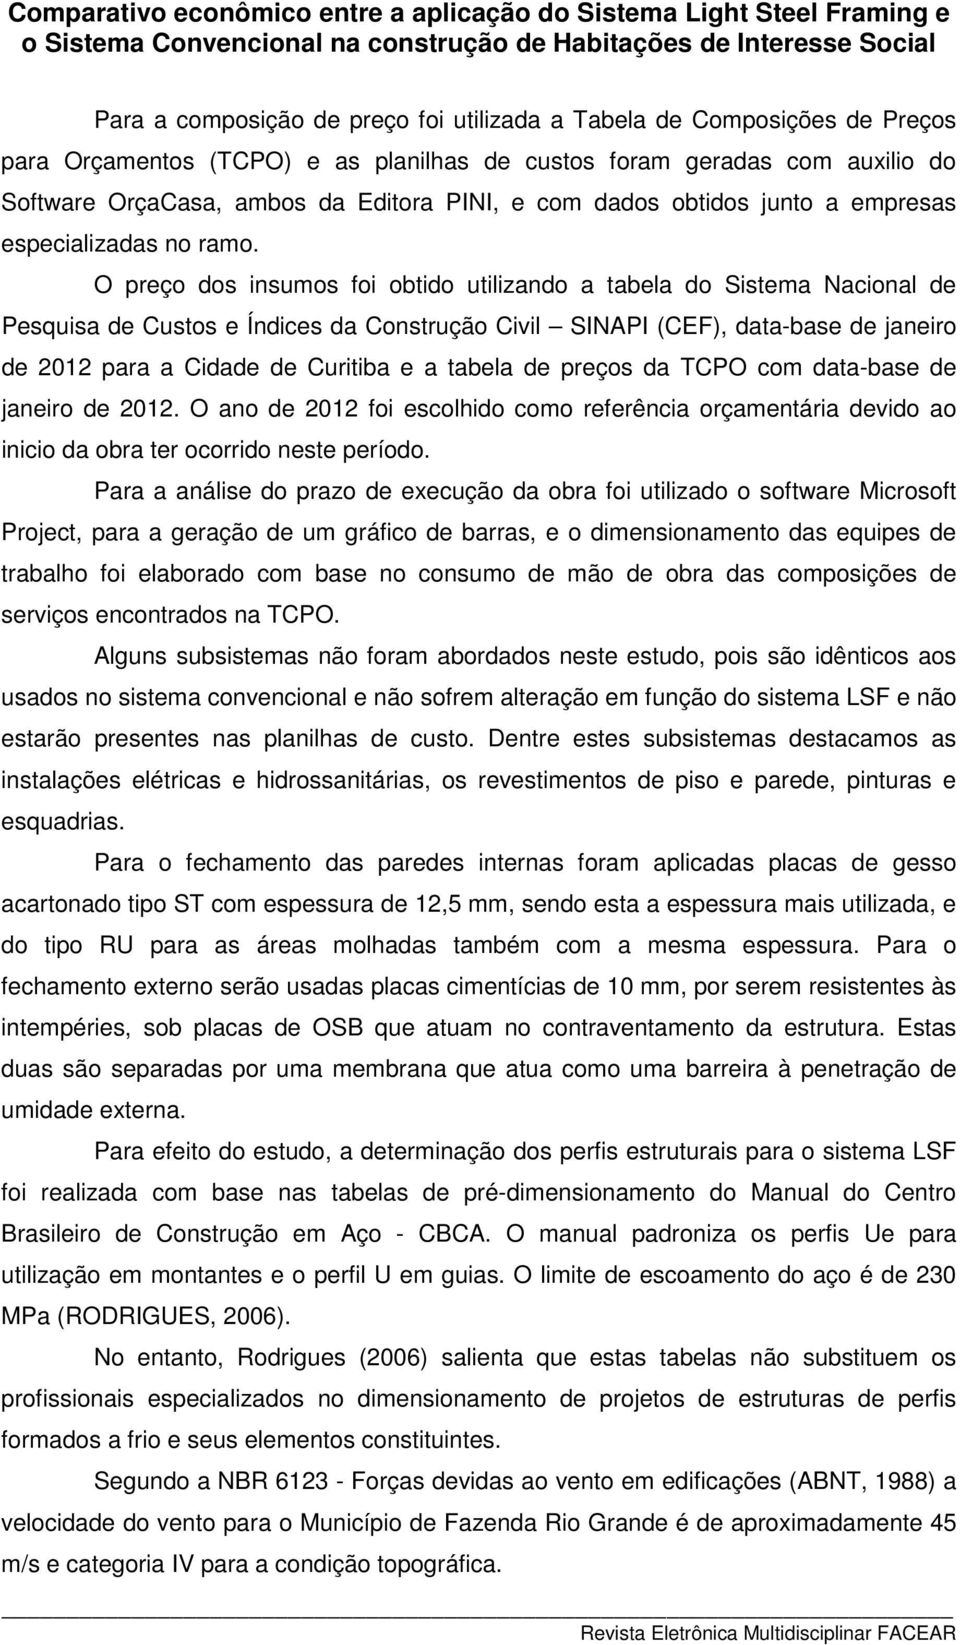 O preço dos insumos foi obtido utilizando a tabela do Sistema Nacional de Pesquisa de Custos e Índices da Construção Civil SINAPI (CEF), data-base de janeiro de 2012 para a Cidade de Curitiba e a